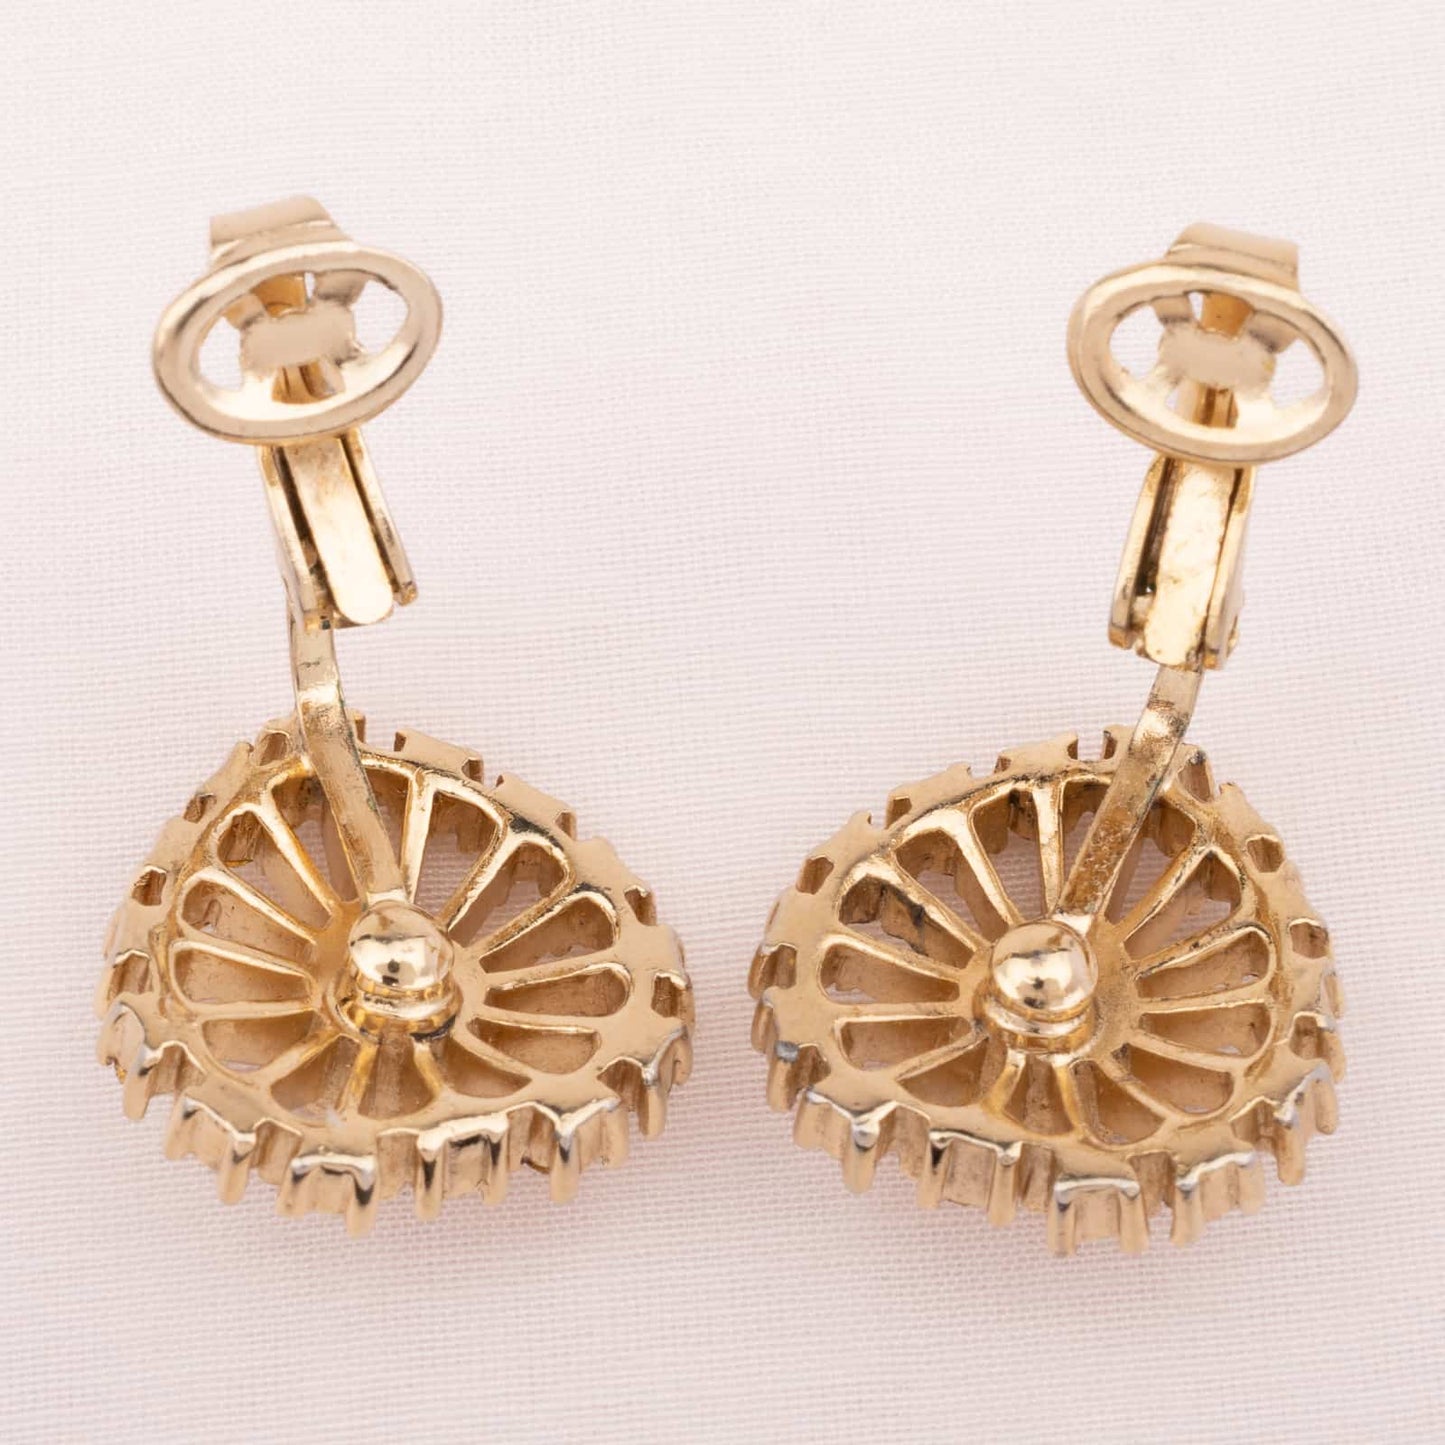 Trifari heart shaped earrings